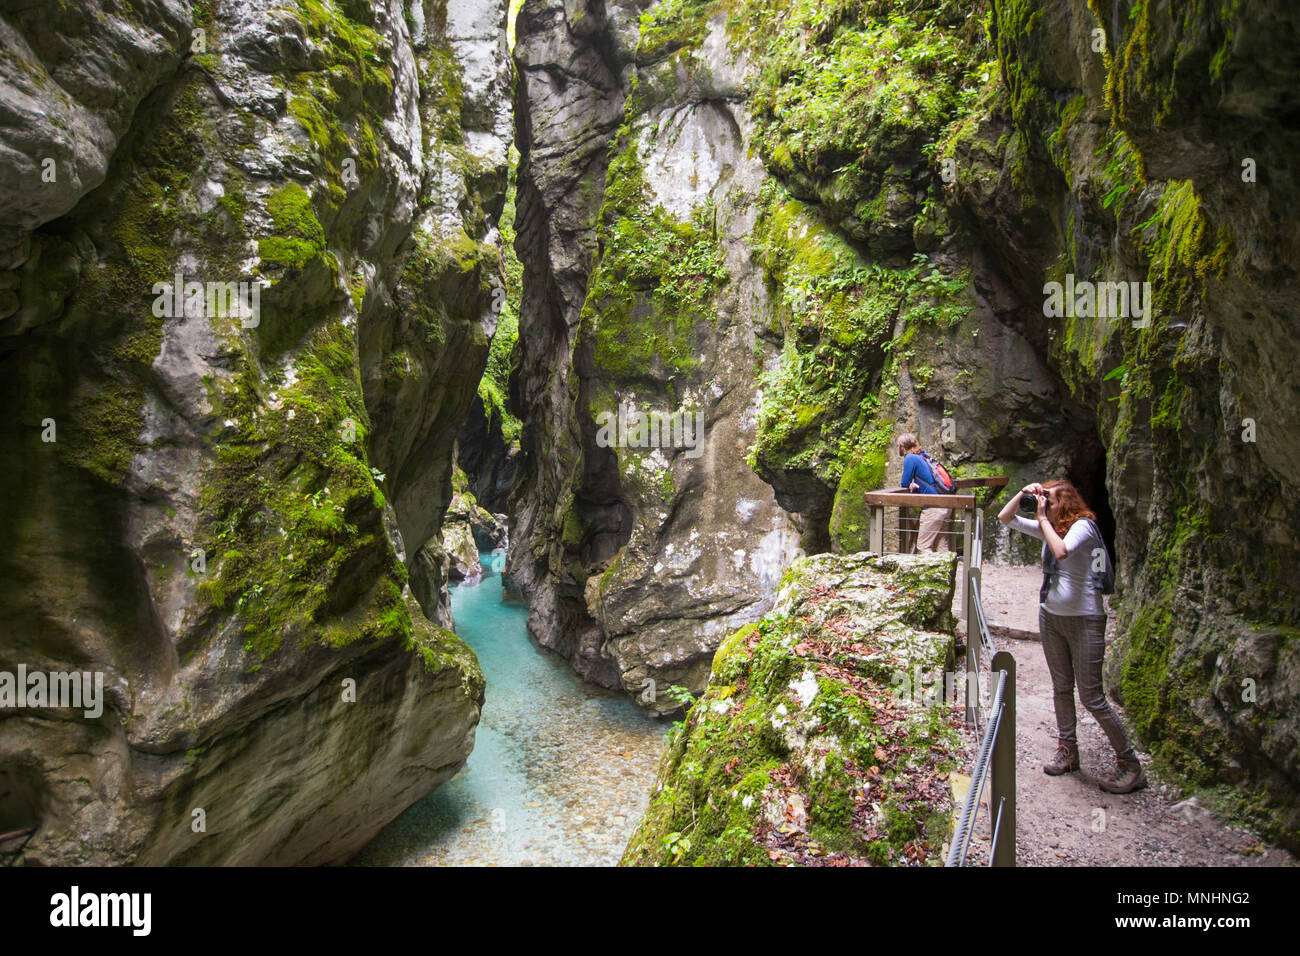 Turisti che si godono maestoso scenario naturale dell'Tolmin gorge nel Parco Nazionale del Triglav, Slovenia Foto Stock